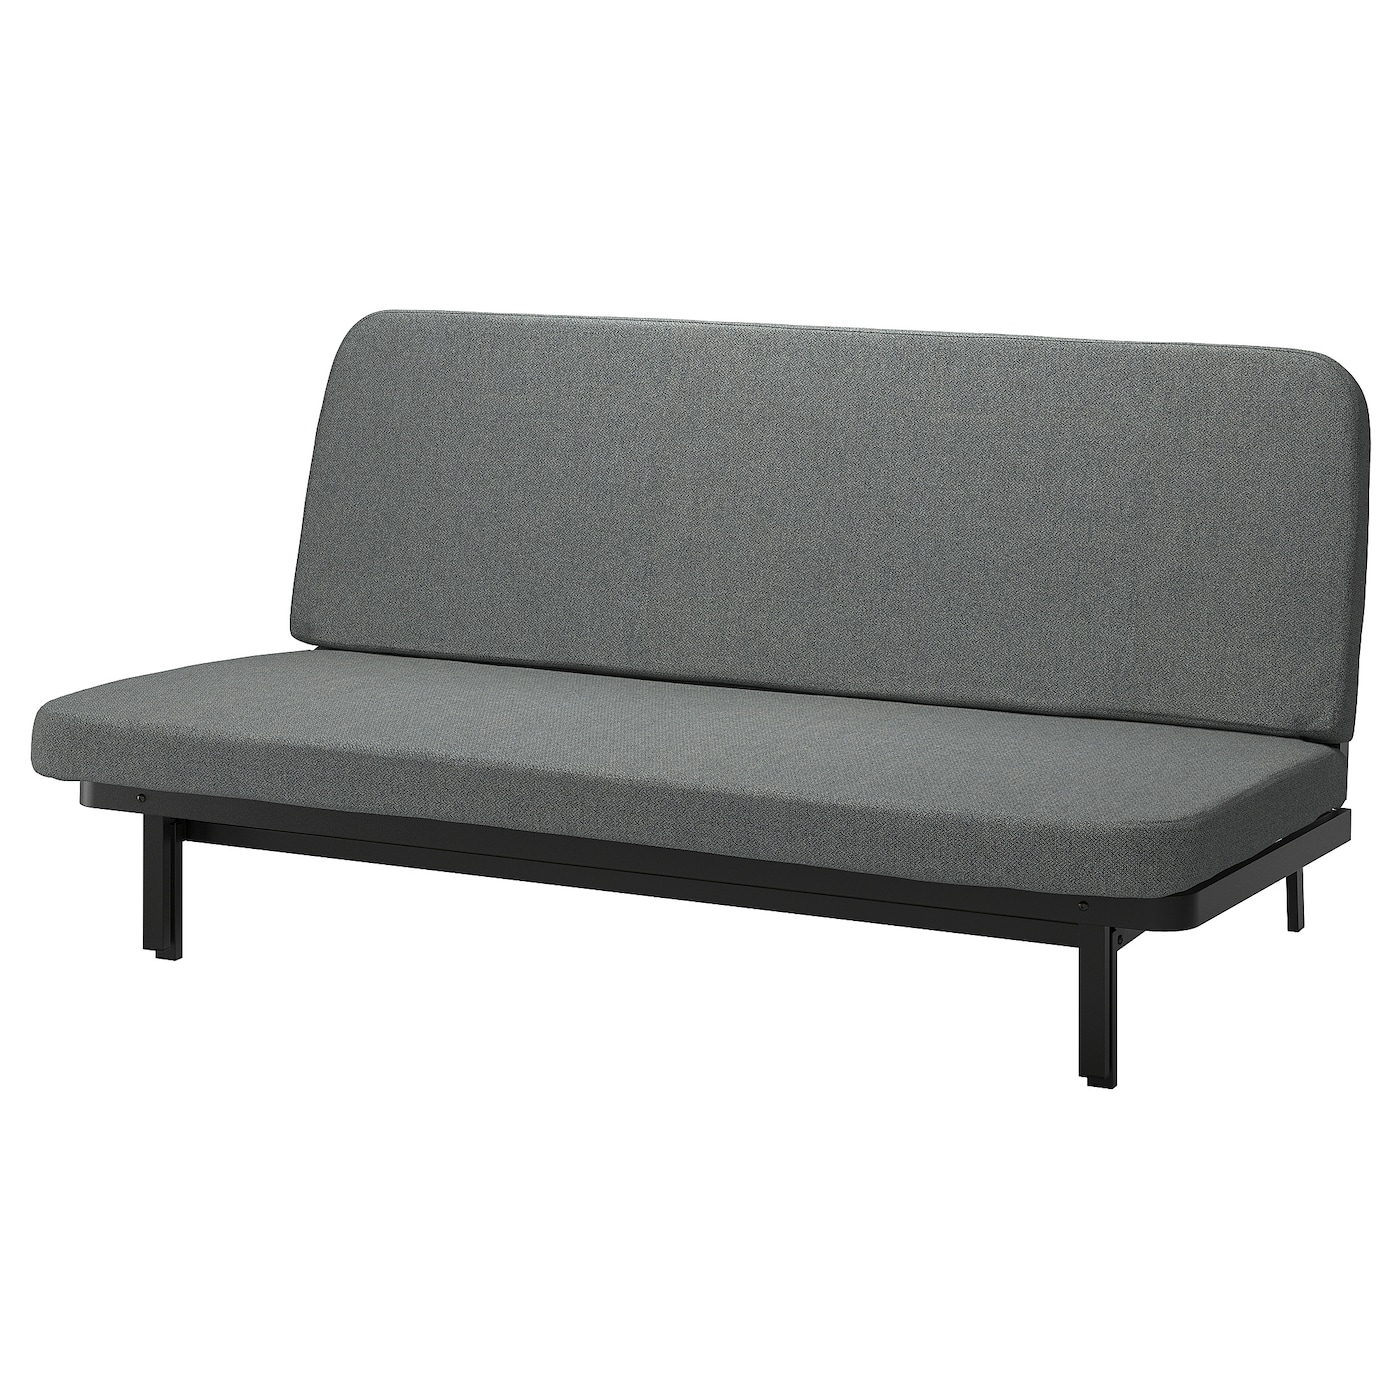 NYHAMN 3-местный диван-кровать, поролоновый матрас в комплекте/Скартофт черный/светло-серый IKEA складная двухцелевая спинка плавающий ряд с сетчатым гамаком водный развлекательный шезлонг плавающая кровать диван